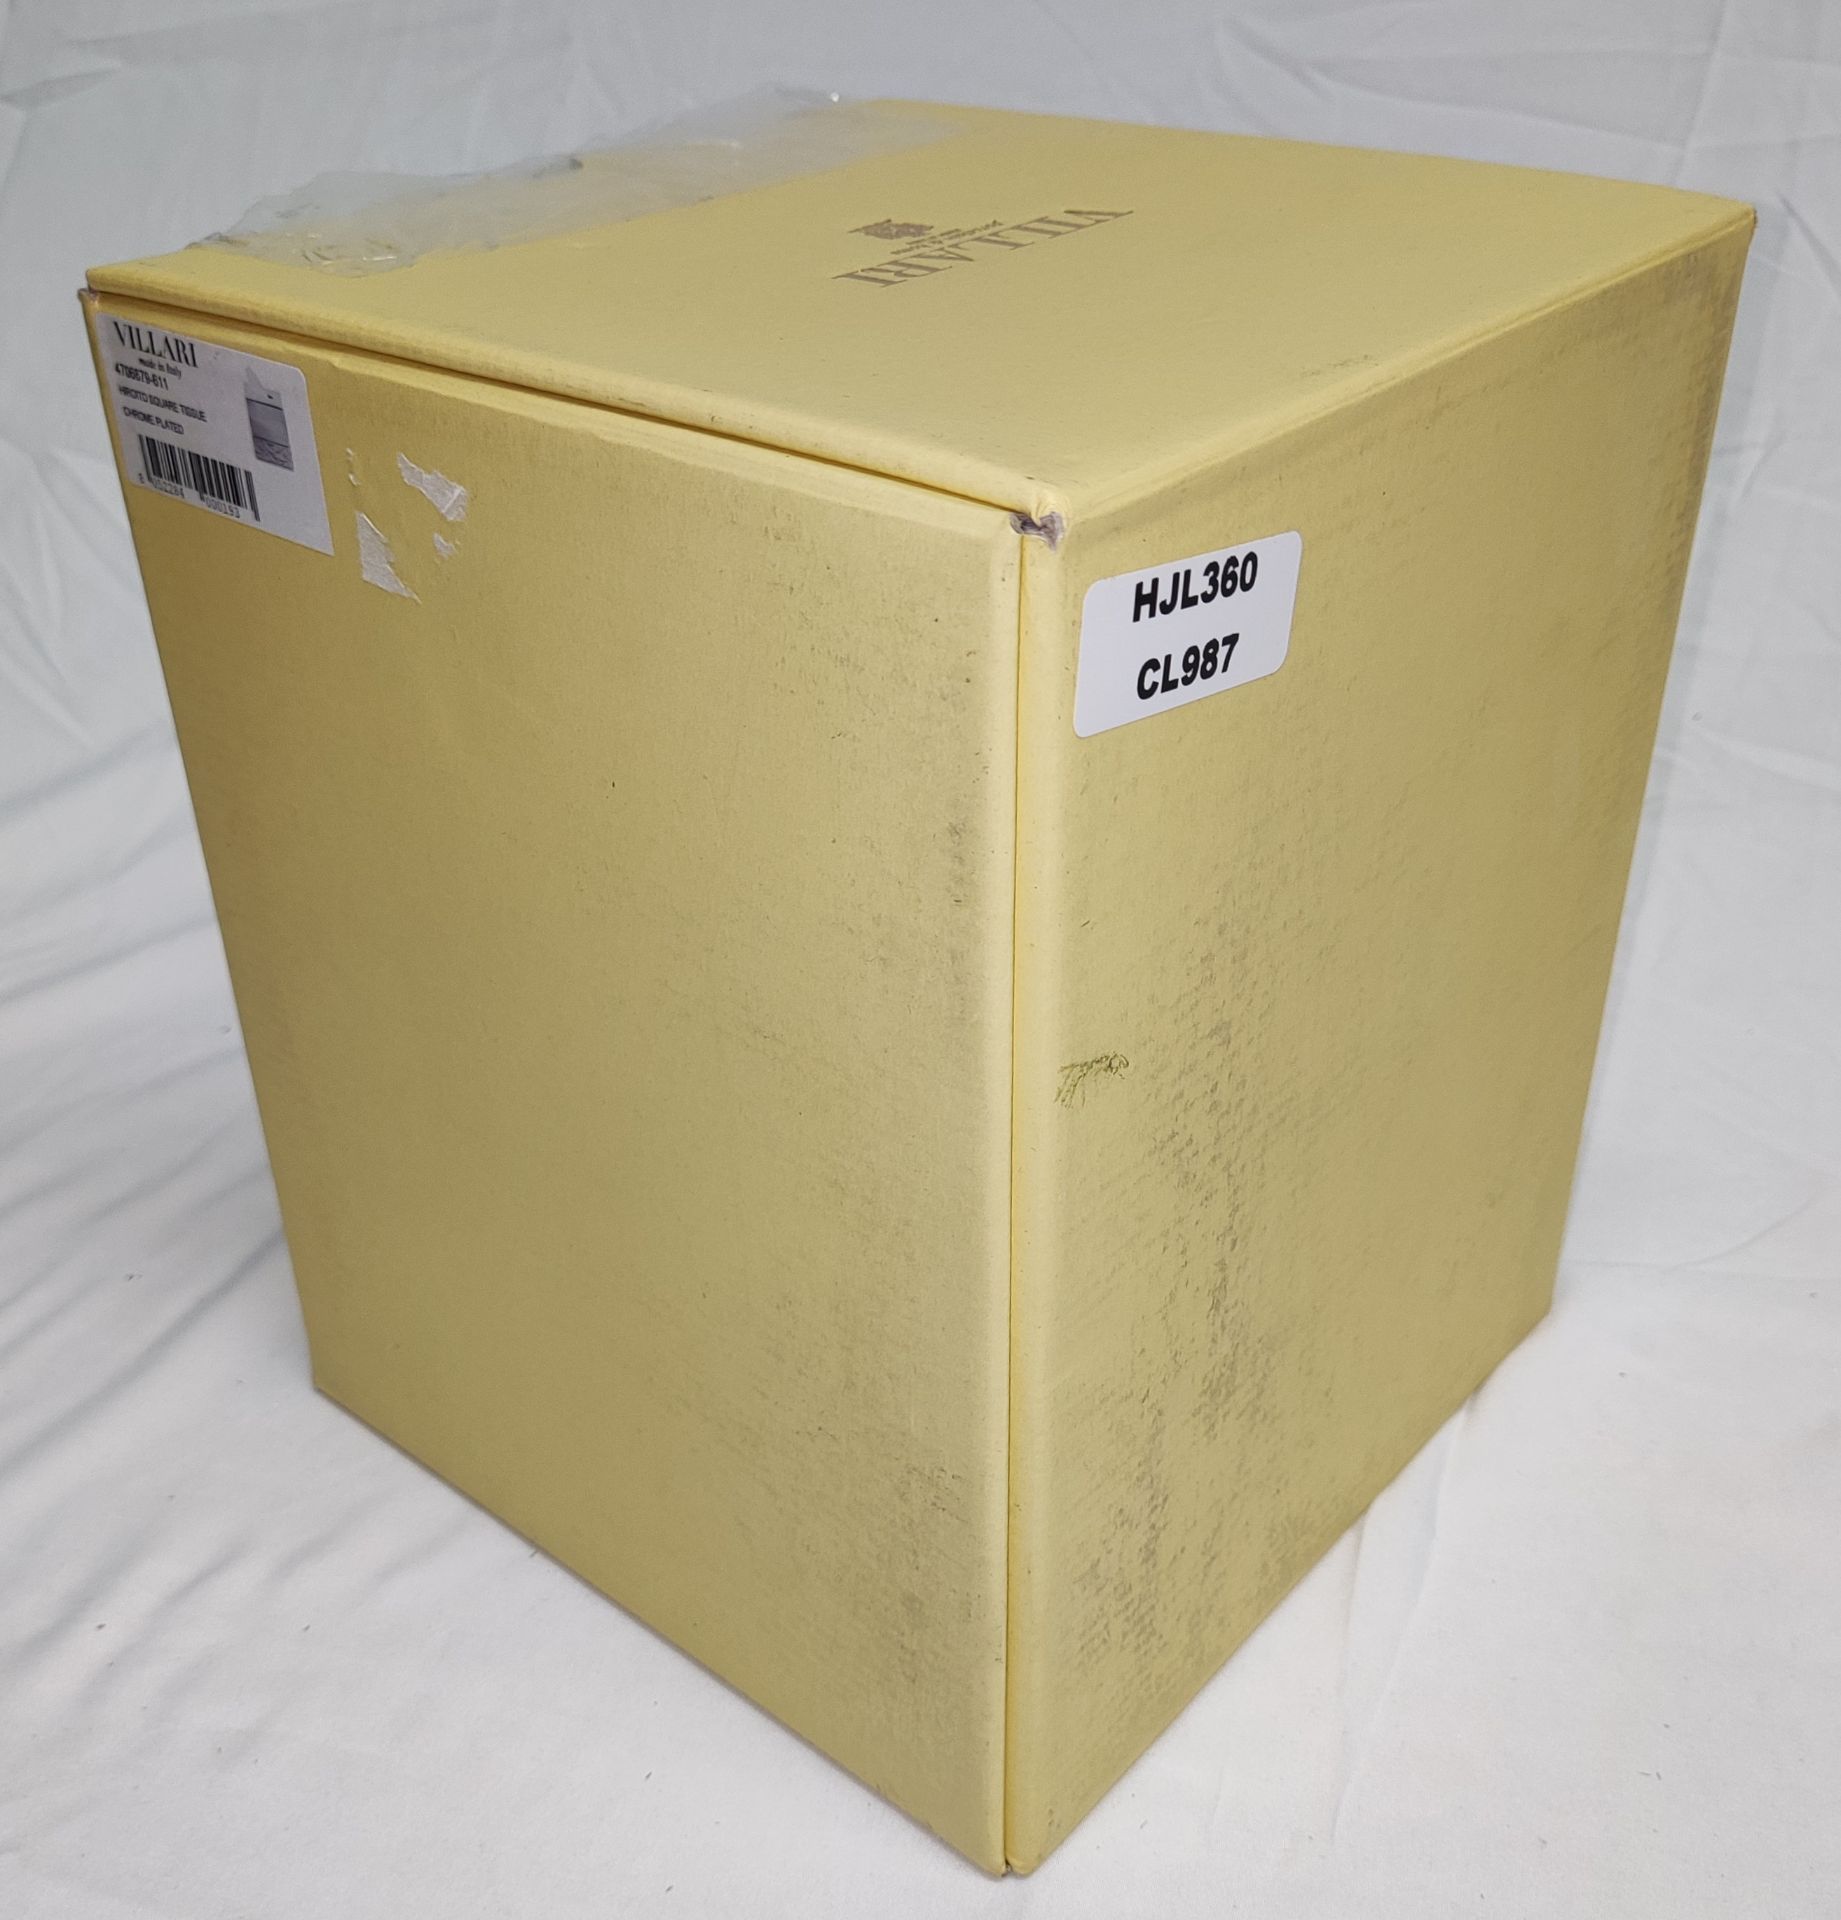 1 x VILLARI Hiroito Square Tissue Box - Chrome Plated - Boxed - Original RRP £529 - Ref: 6125321/ - Image 13 of 17